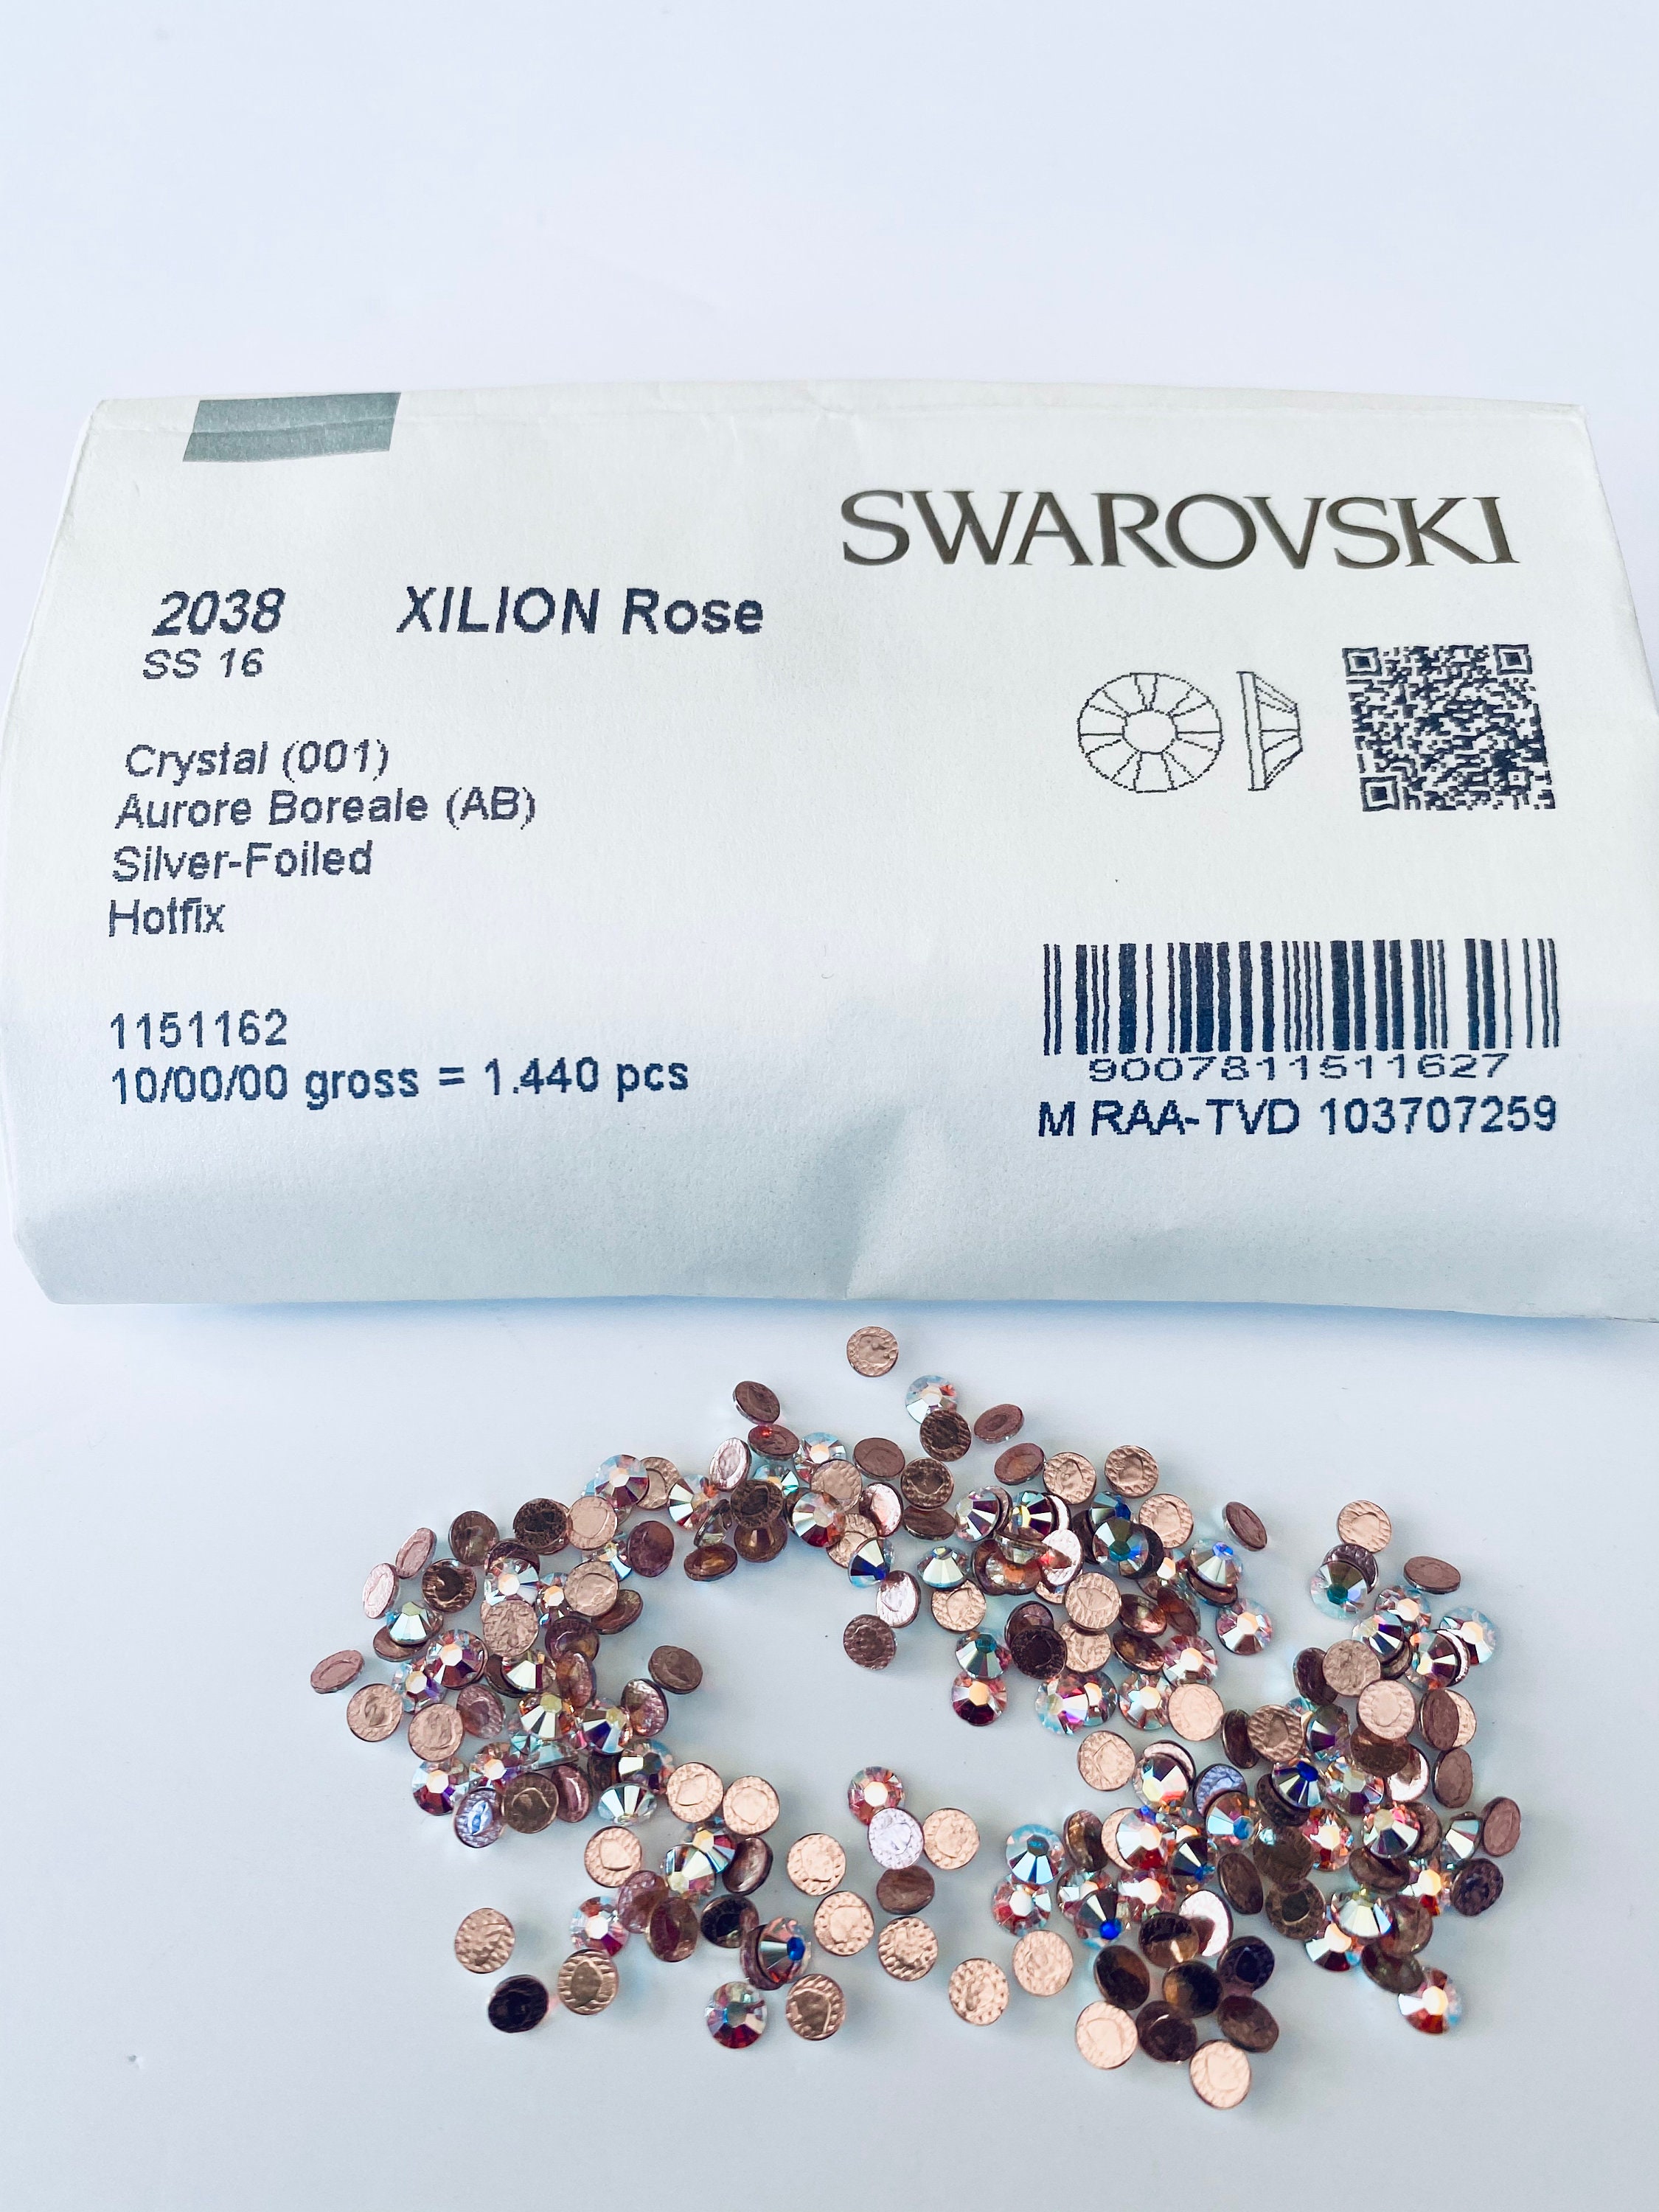 Swarovski Crystals Rhinestones Gems Flat Back Crystal AB HOT FIX